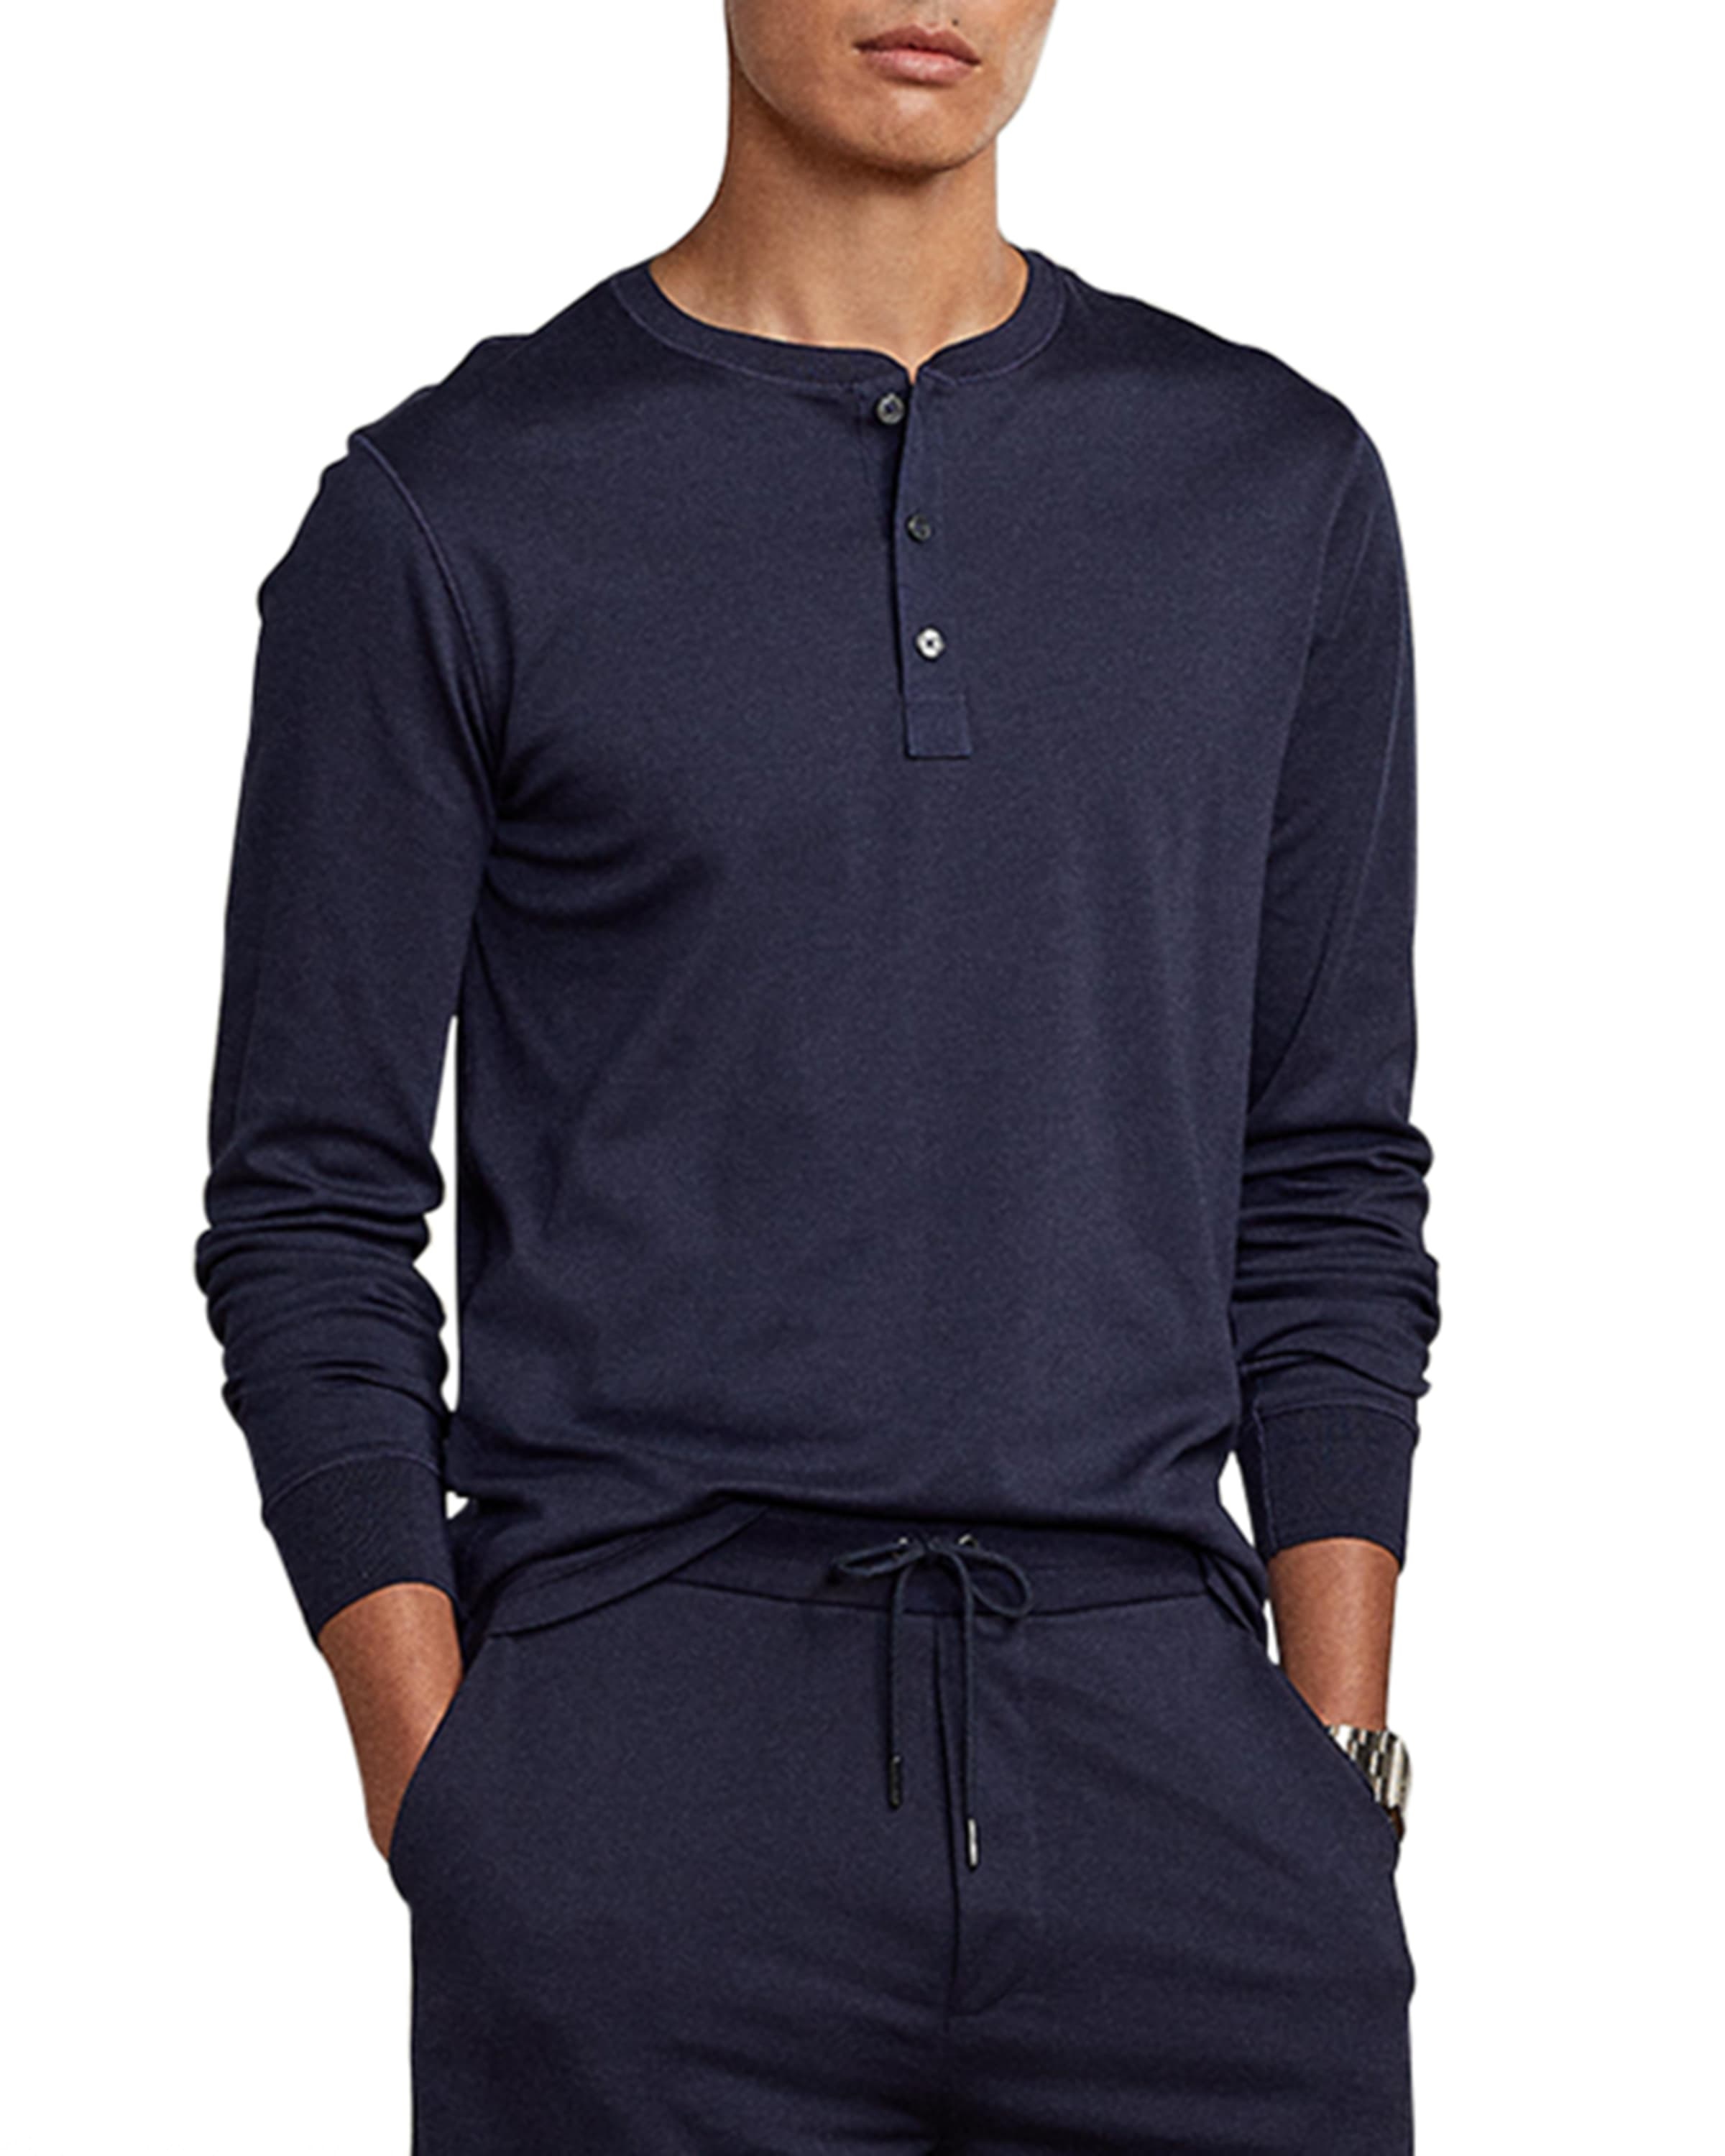 Men's Long-Sleeve Henley Shirt - 2